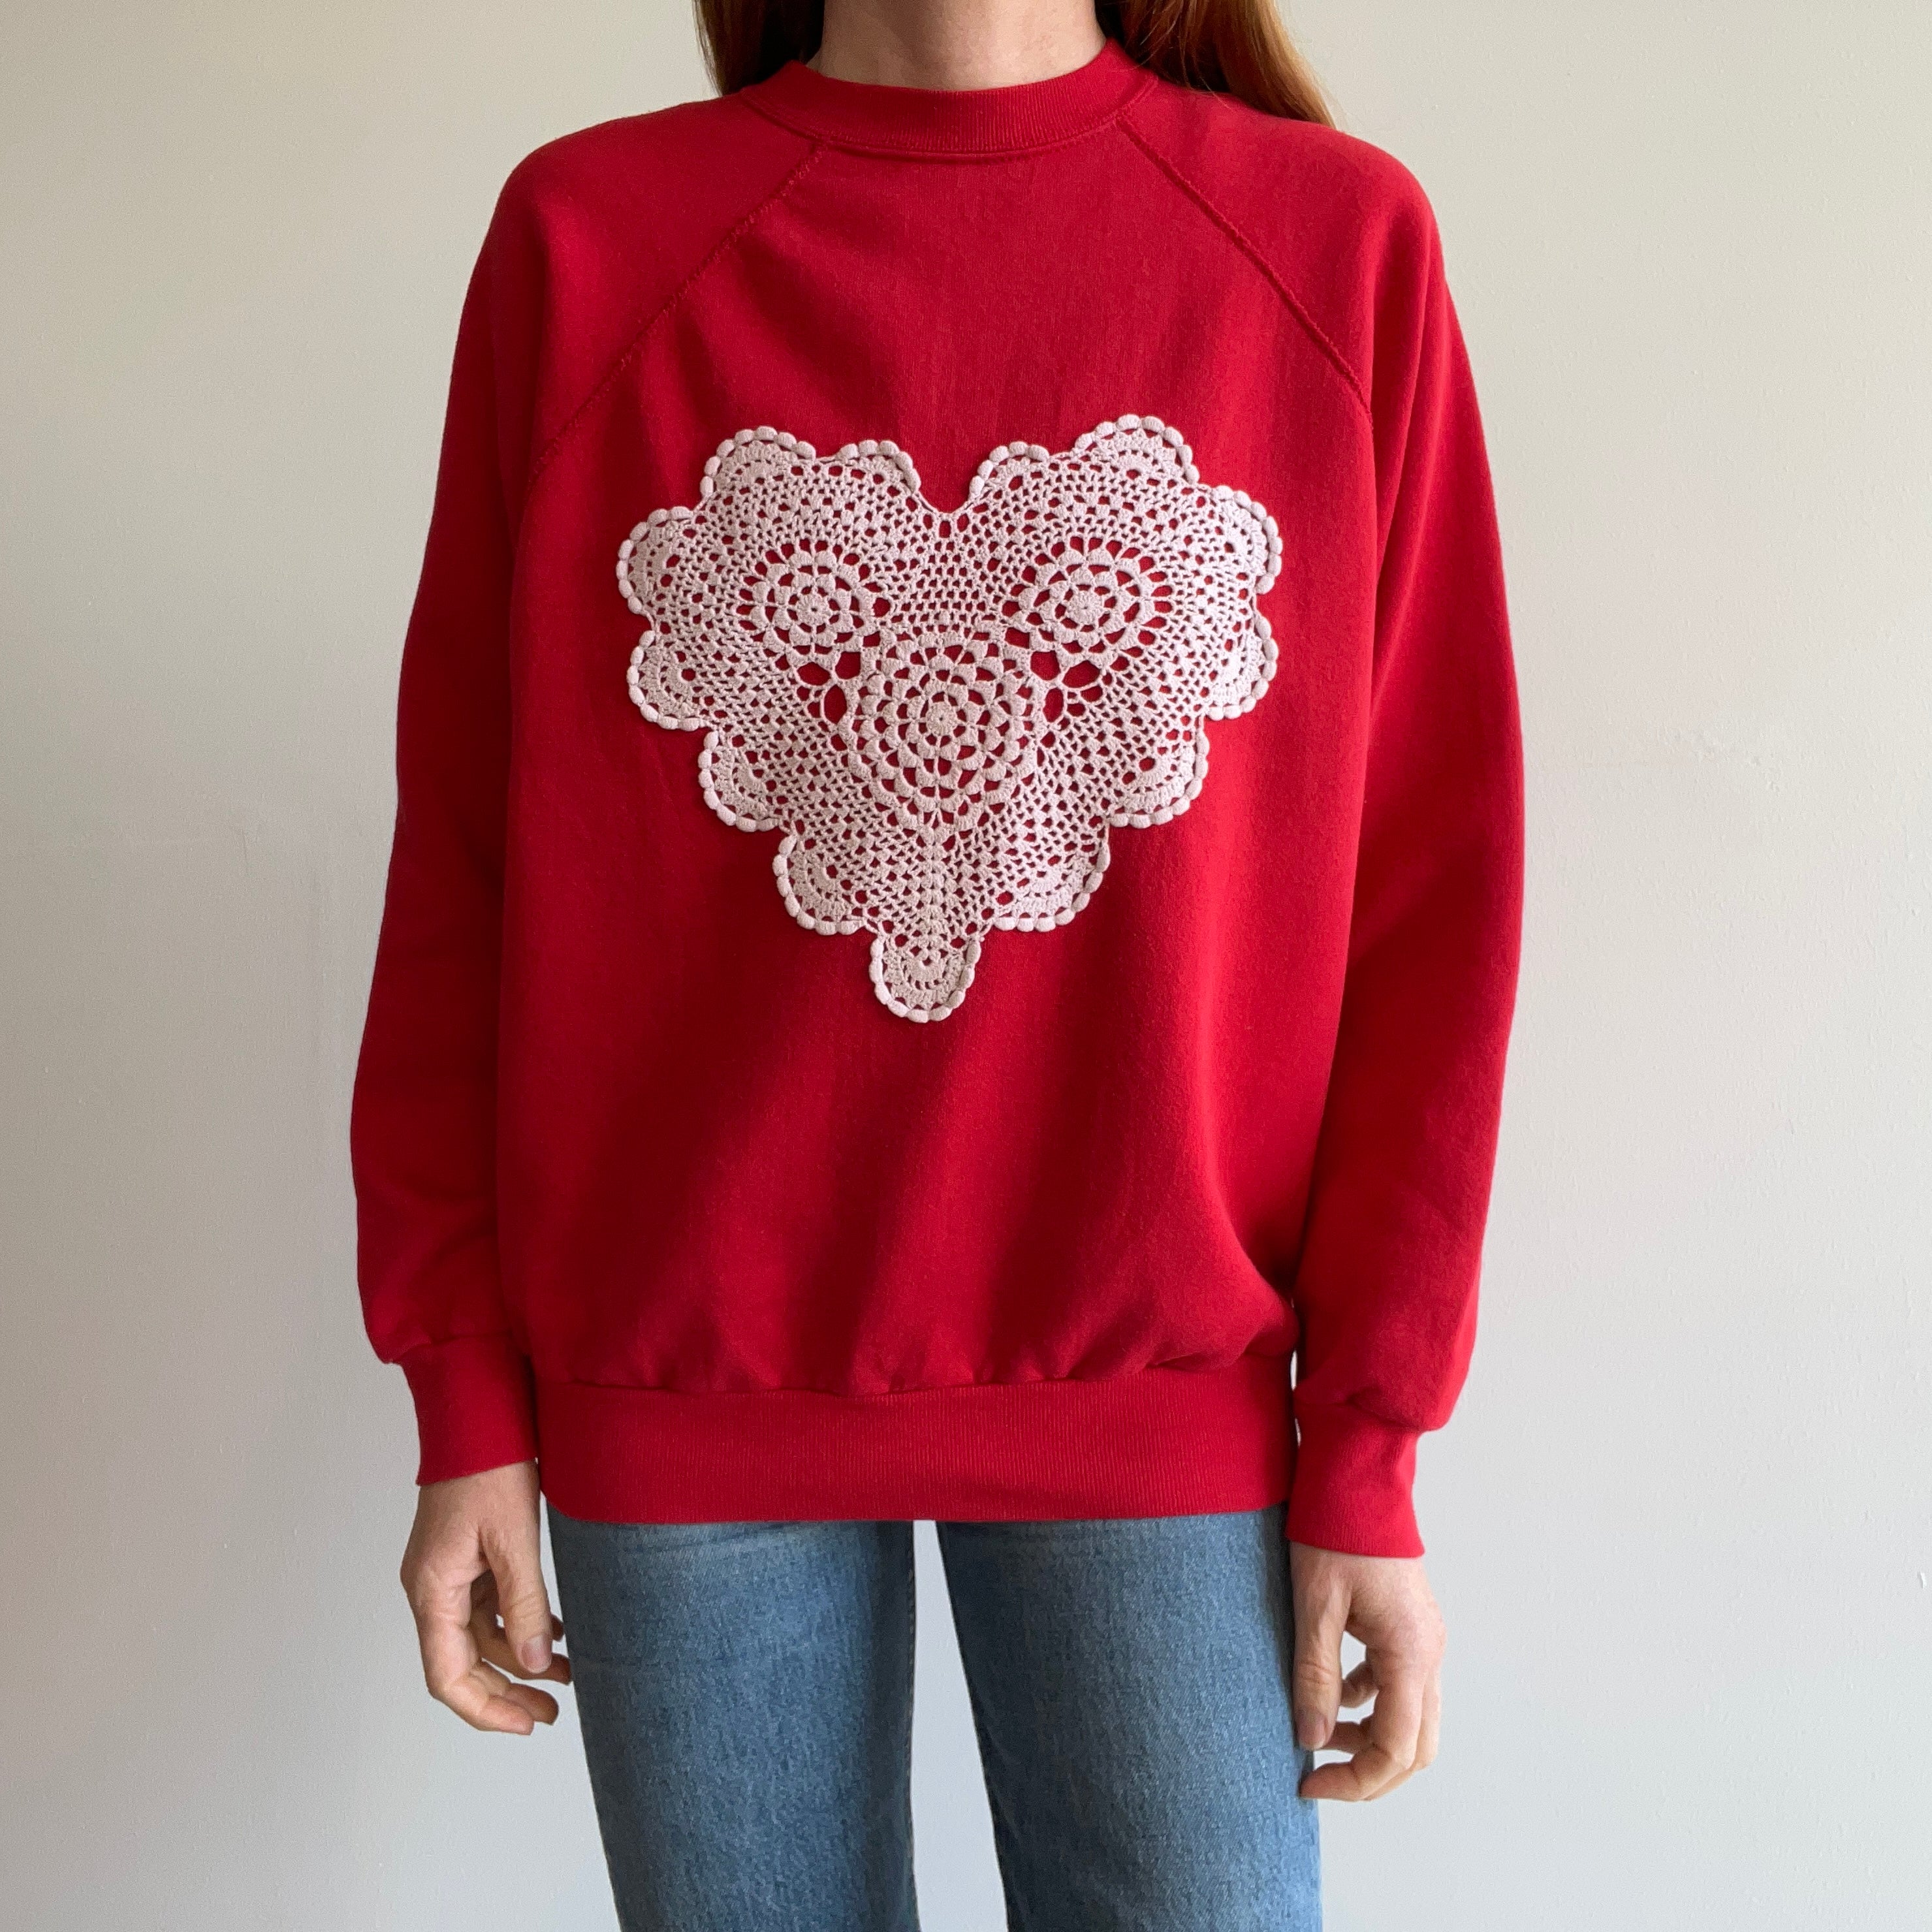 1980s Lace Heart Sweatshirt - DIY - Awwwww